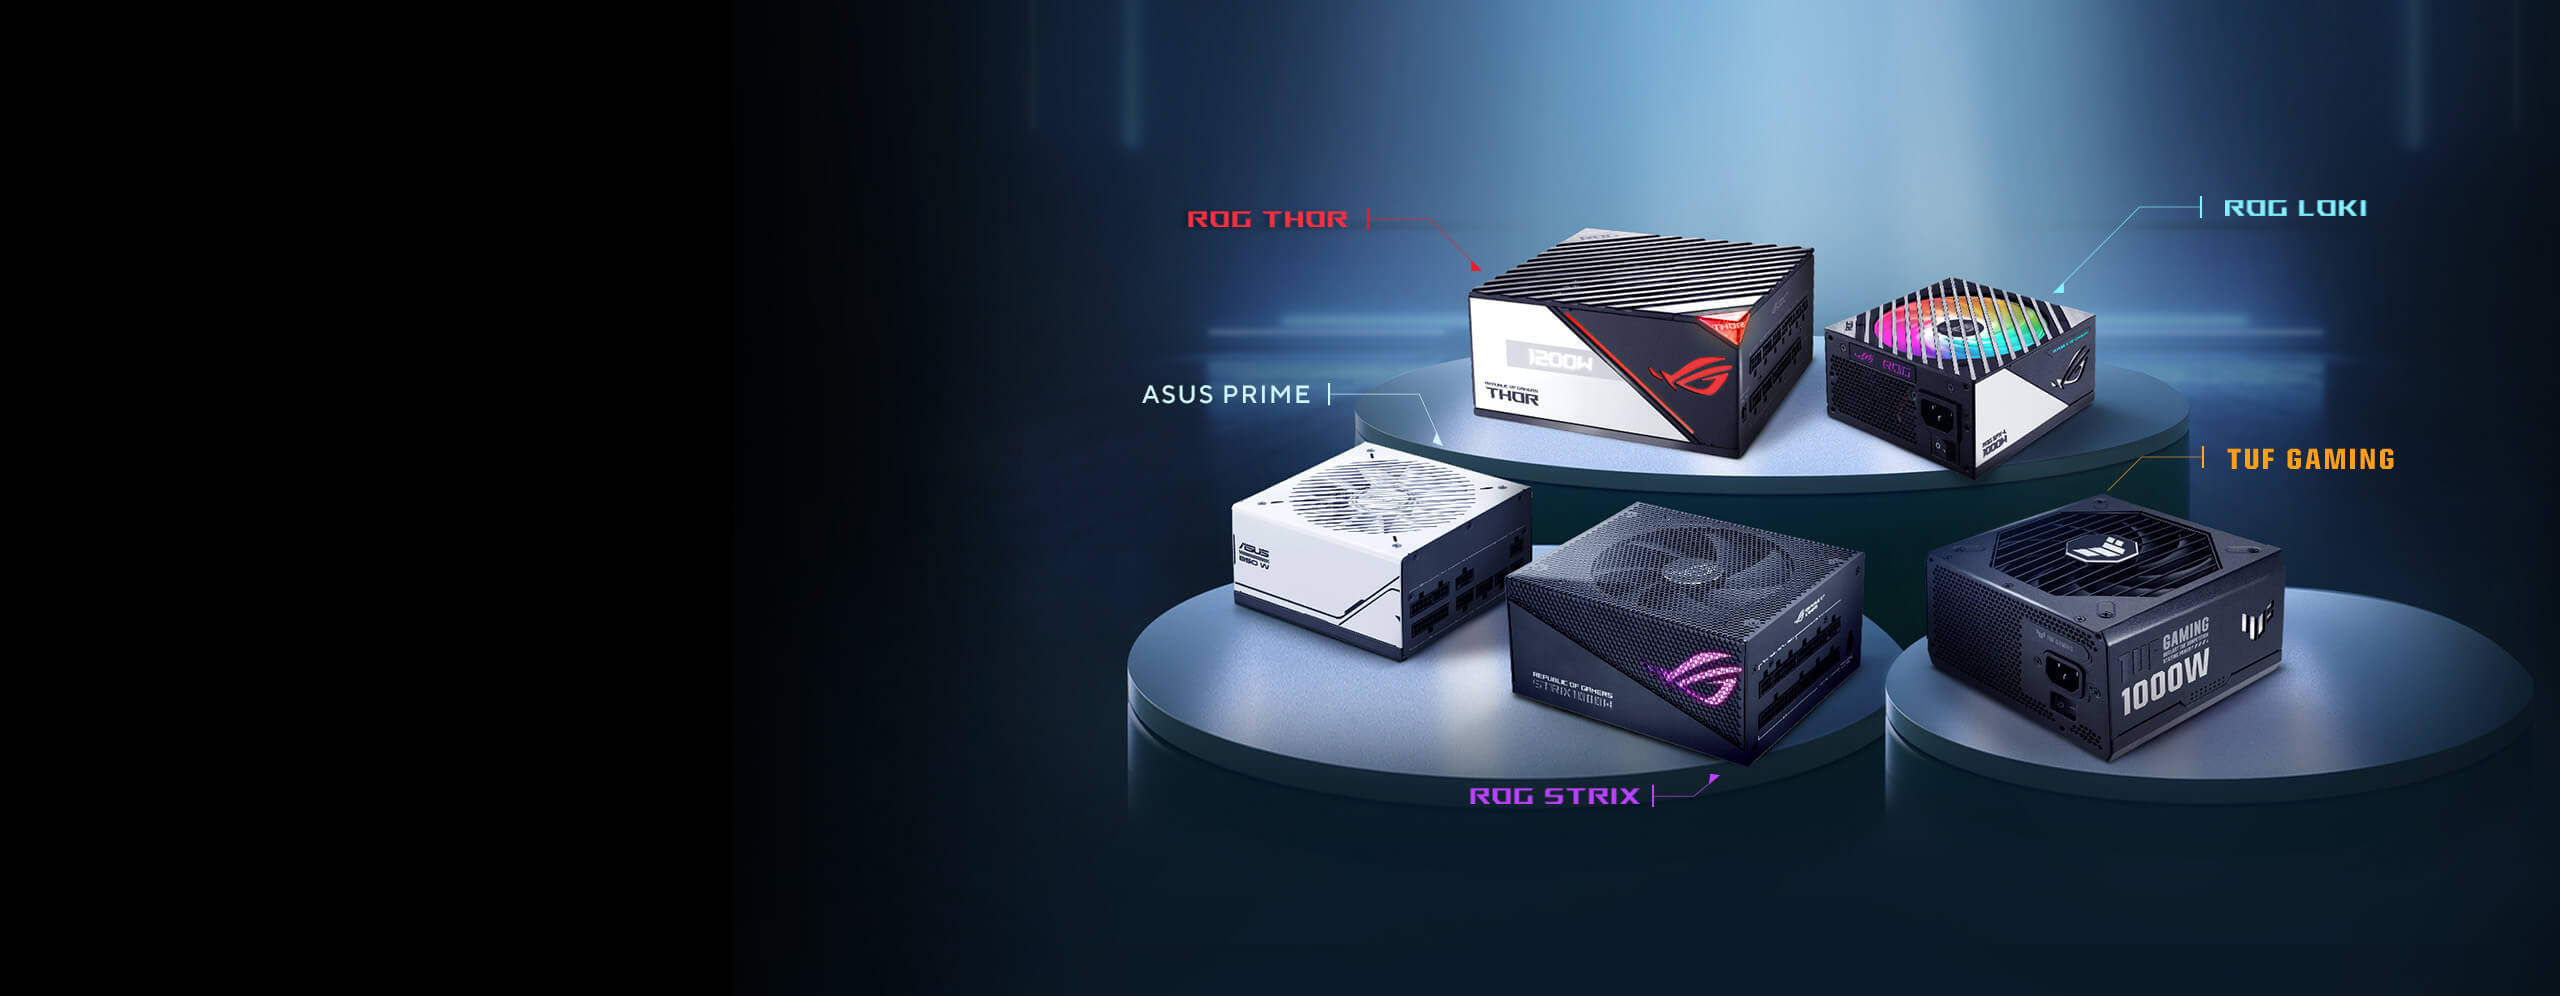 Aanbevolen voedingen voor de AMD Radeon™ RX 7900 GRE videokaart